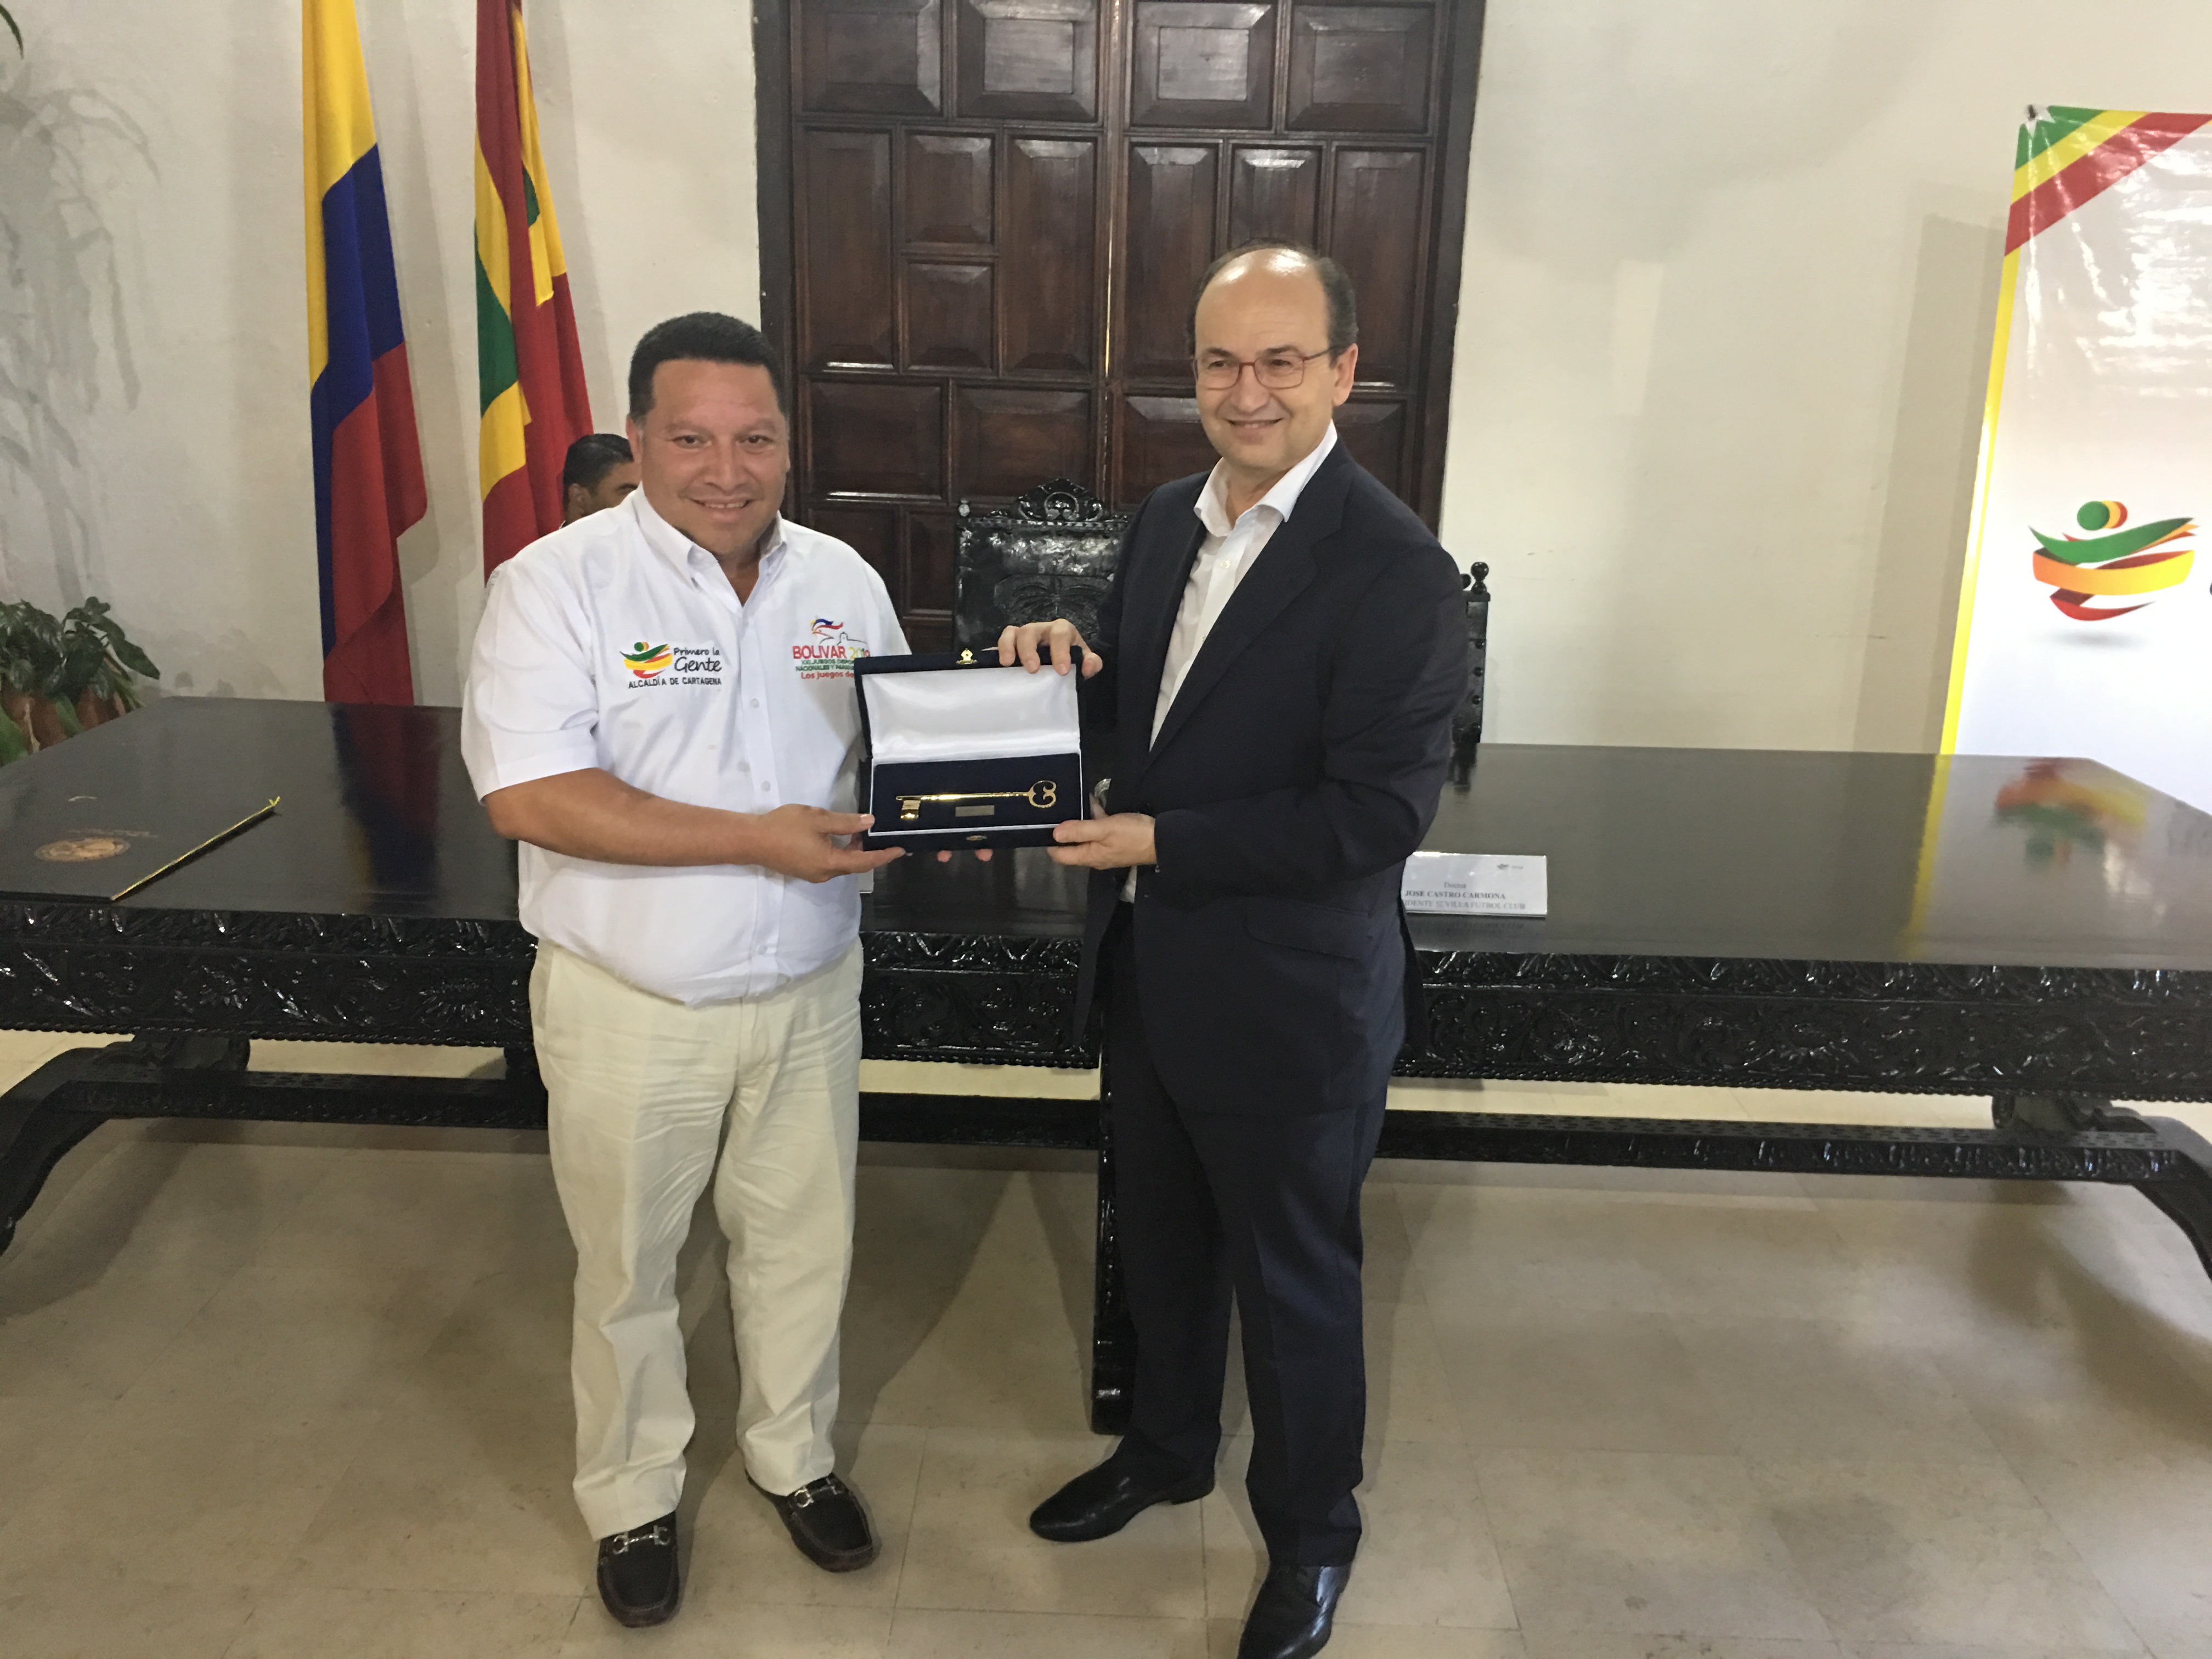 President José Castro receives the key to the city of Cartagena de Indias